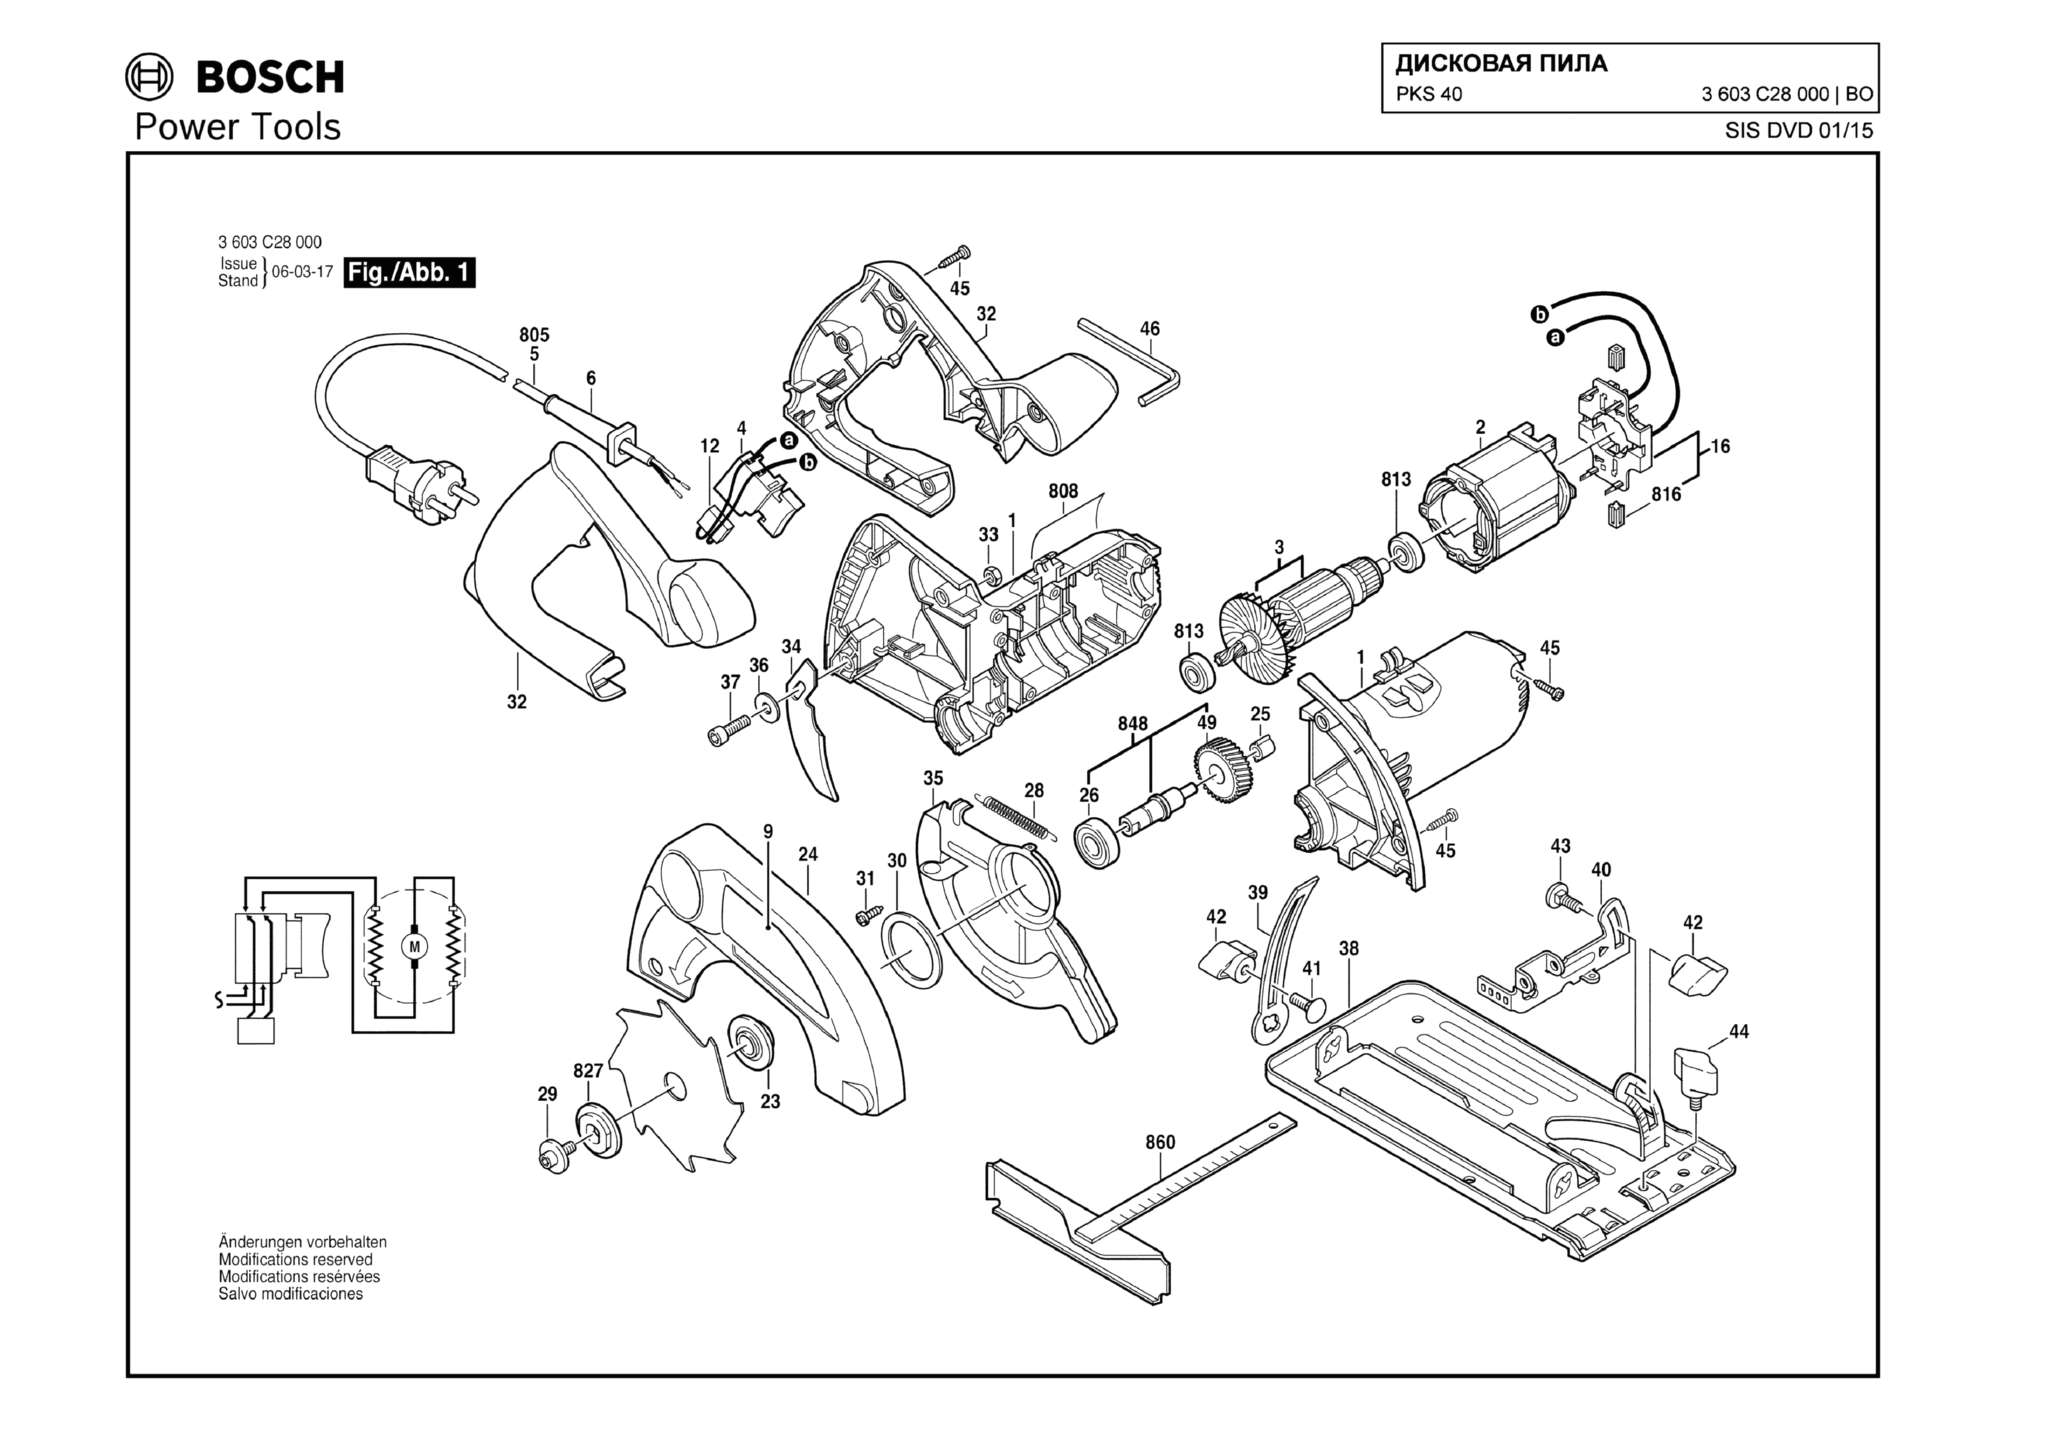 Запчасти, схема и деталировка Bosch PKS 40 (ТИП 3603C28000)